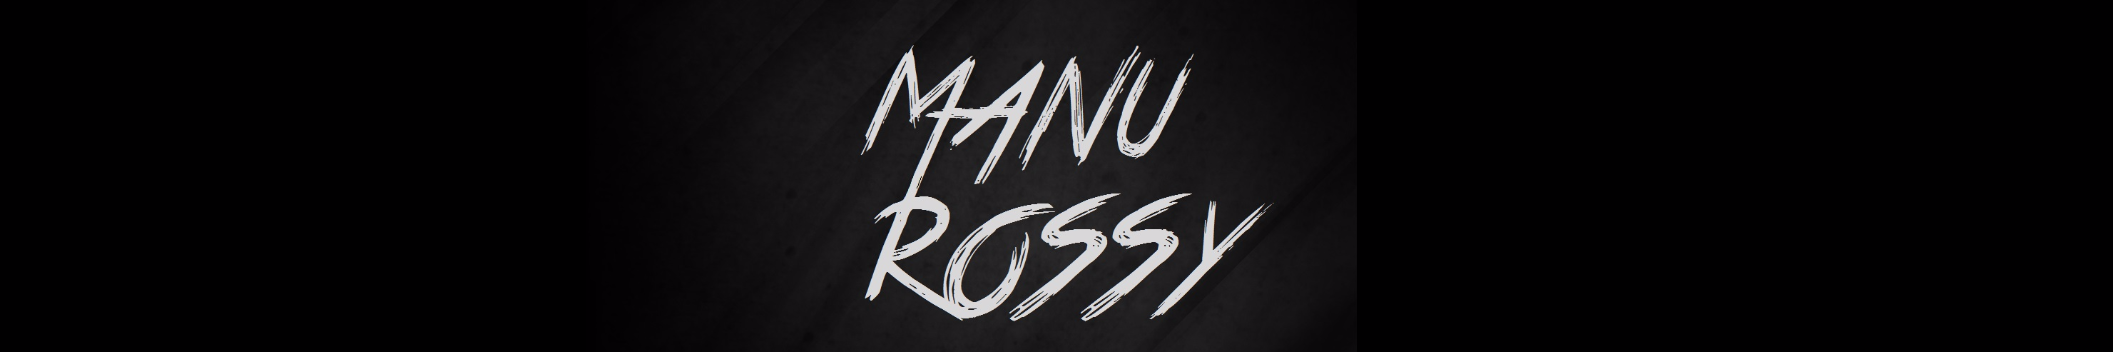 Manu Rossy